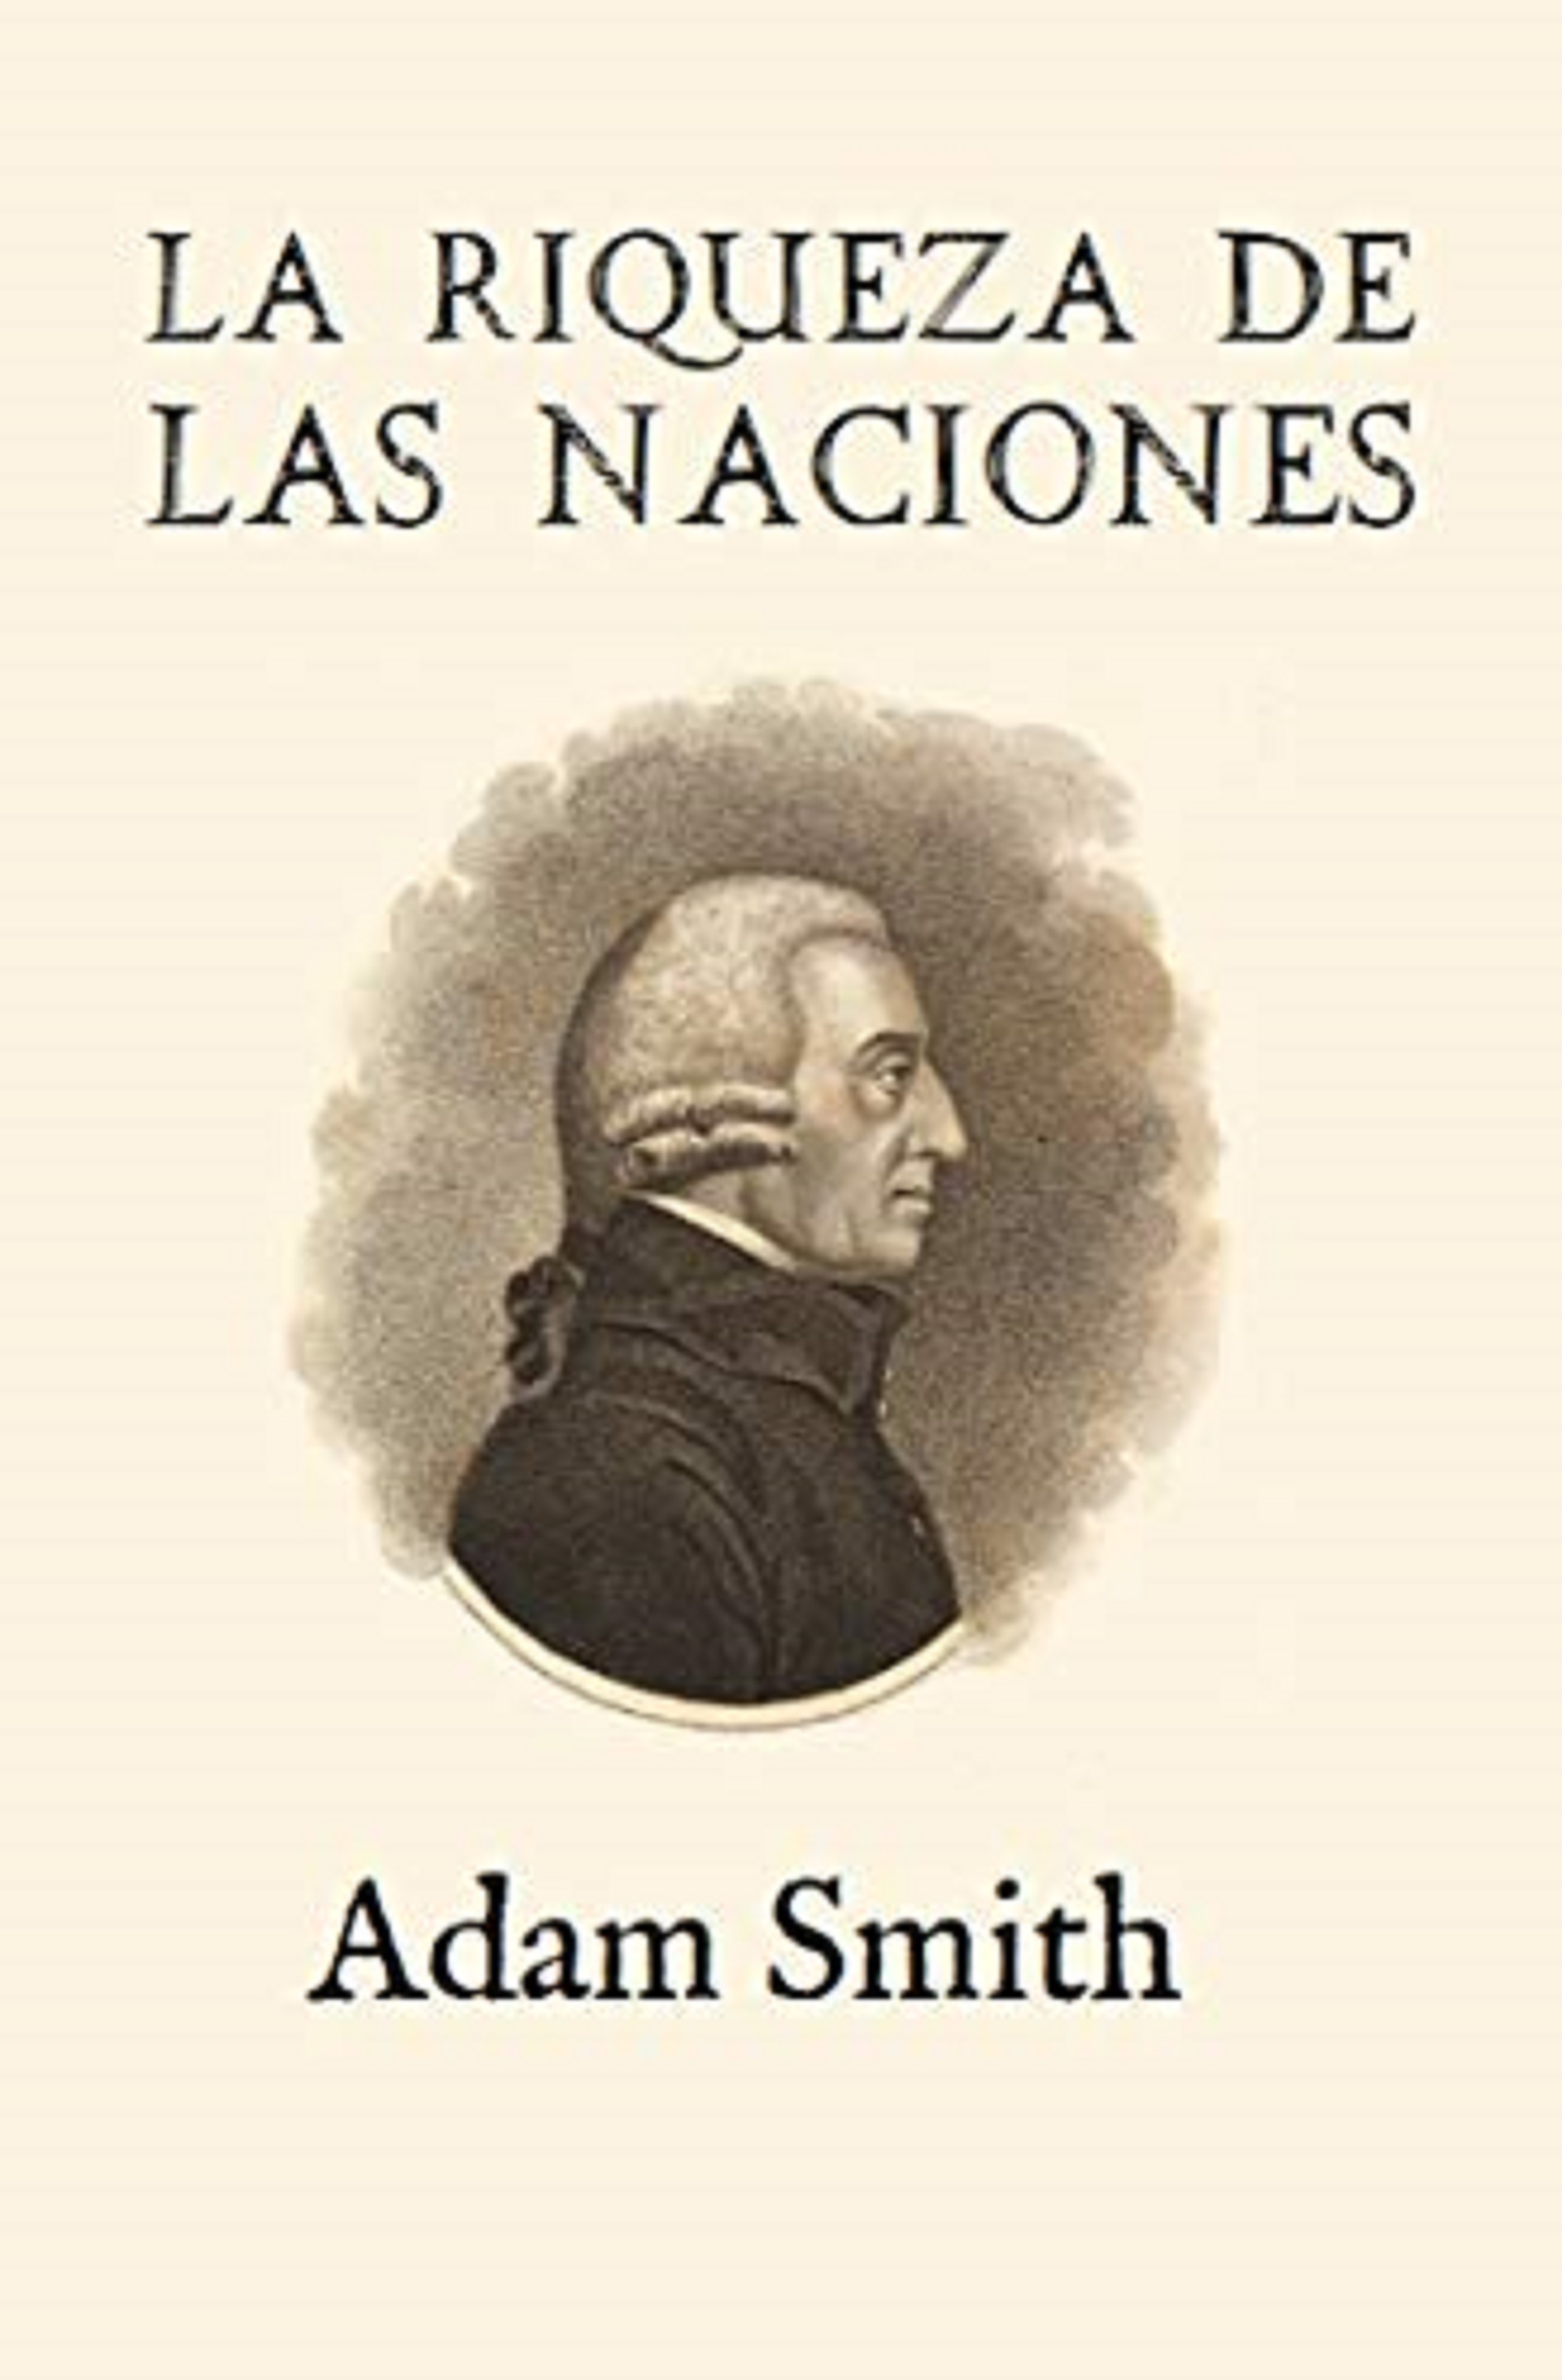 La riqueza de la naciones, de Adam Smith